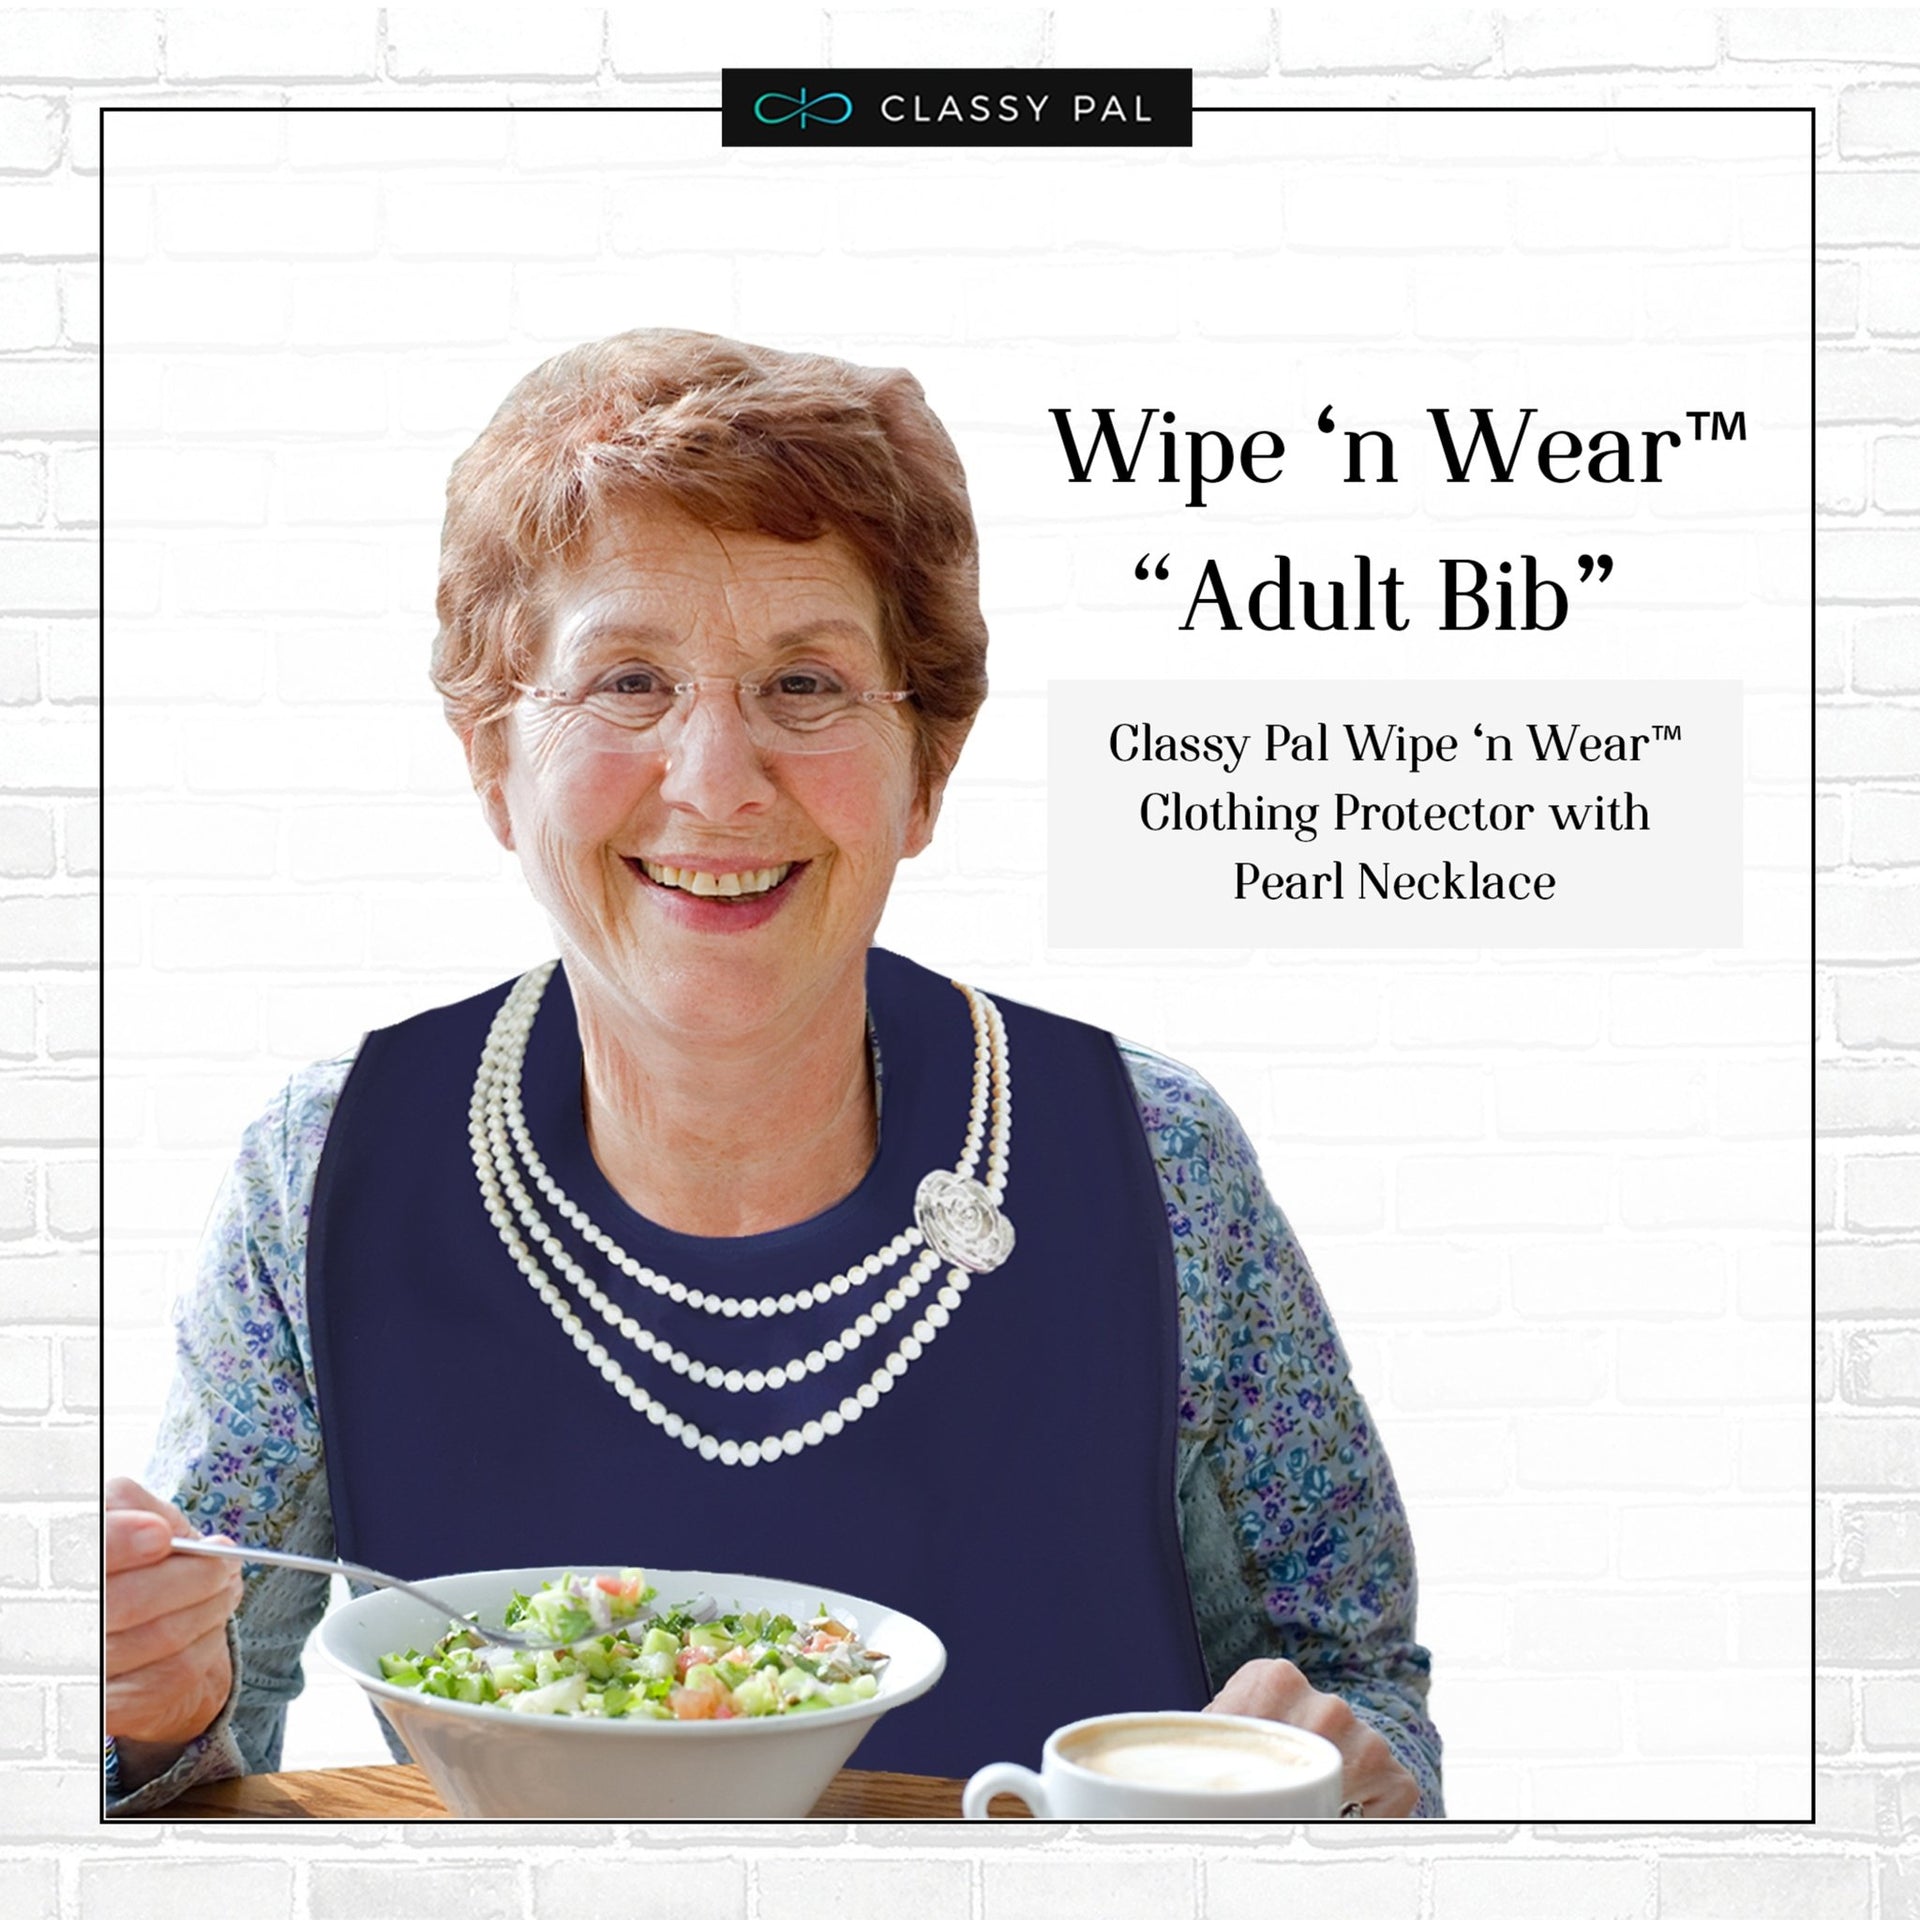 Women's Wipe 'n Wear™ Adult Bib Pearls (3 Pack) - Classy Pal Wipe 'n Wear Adult Bibs